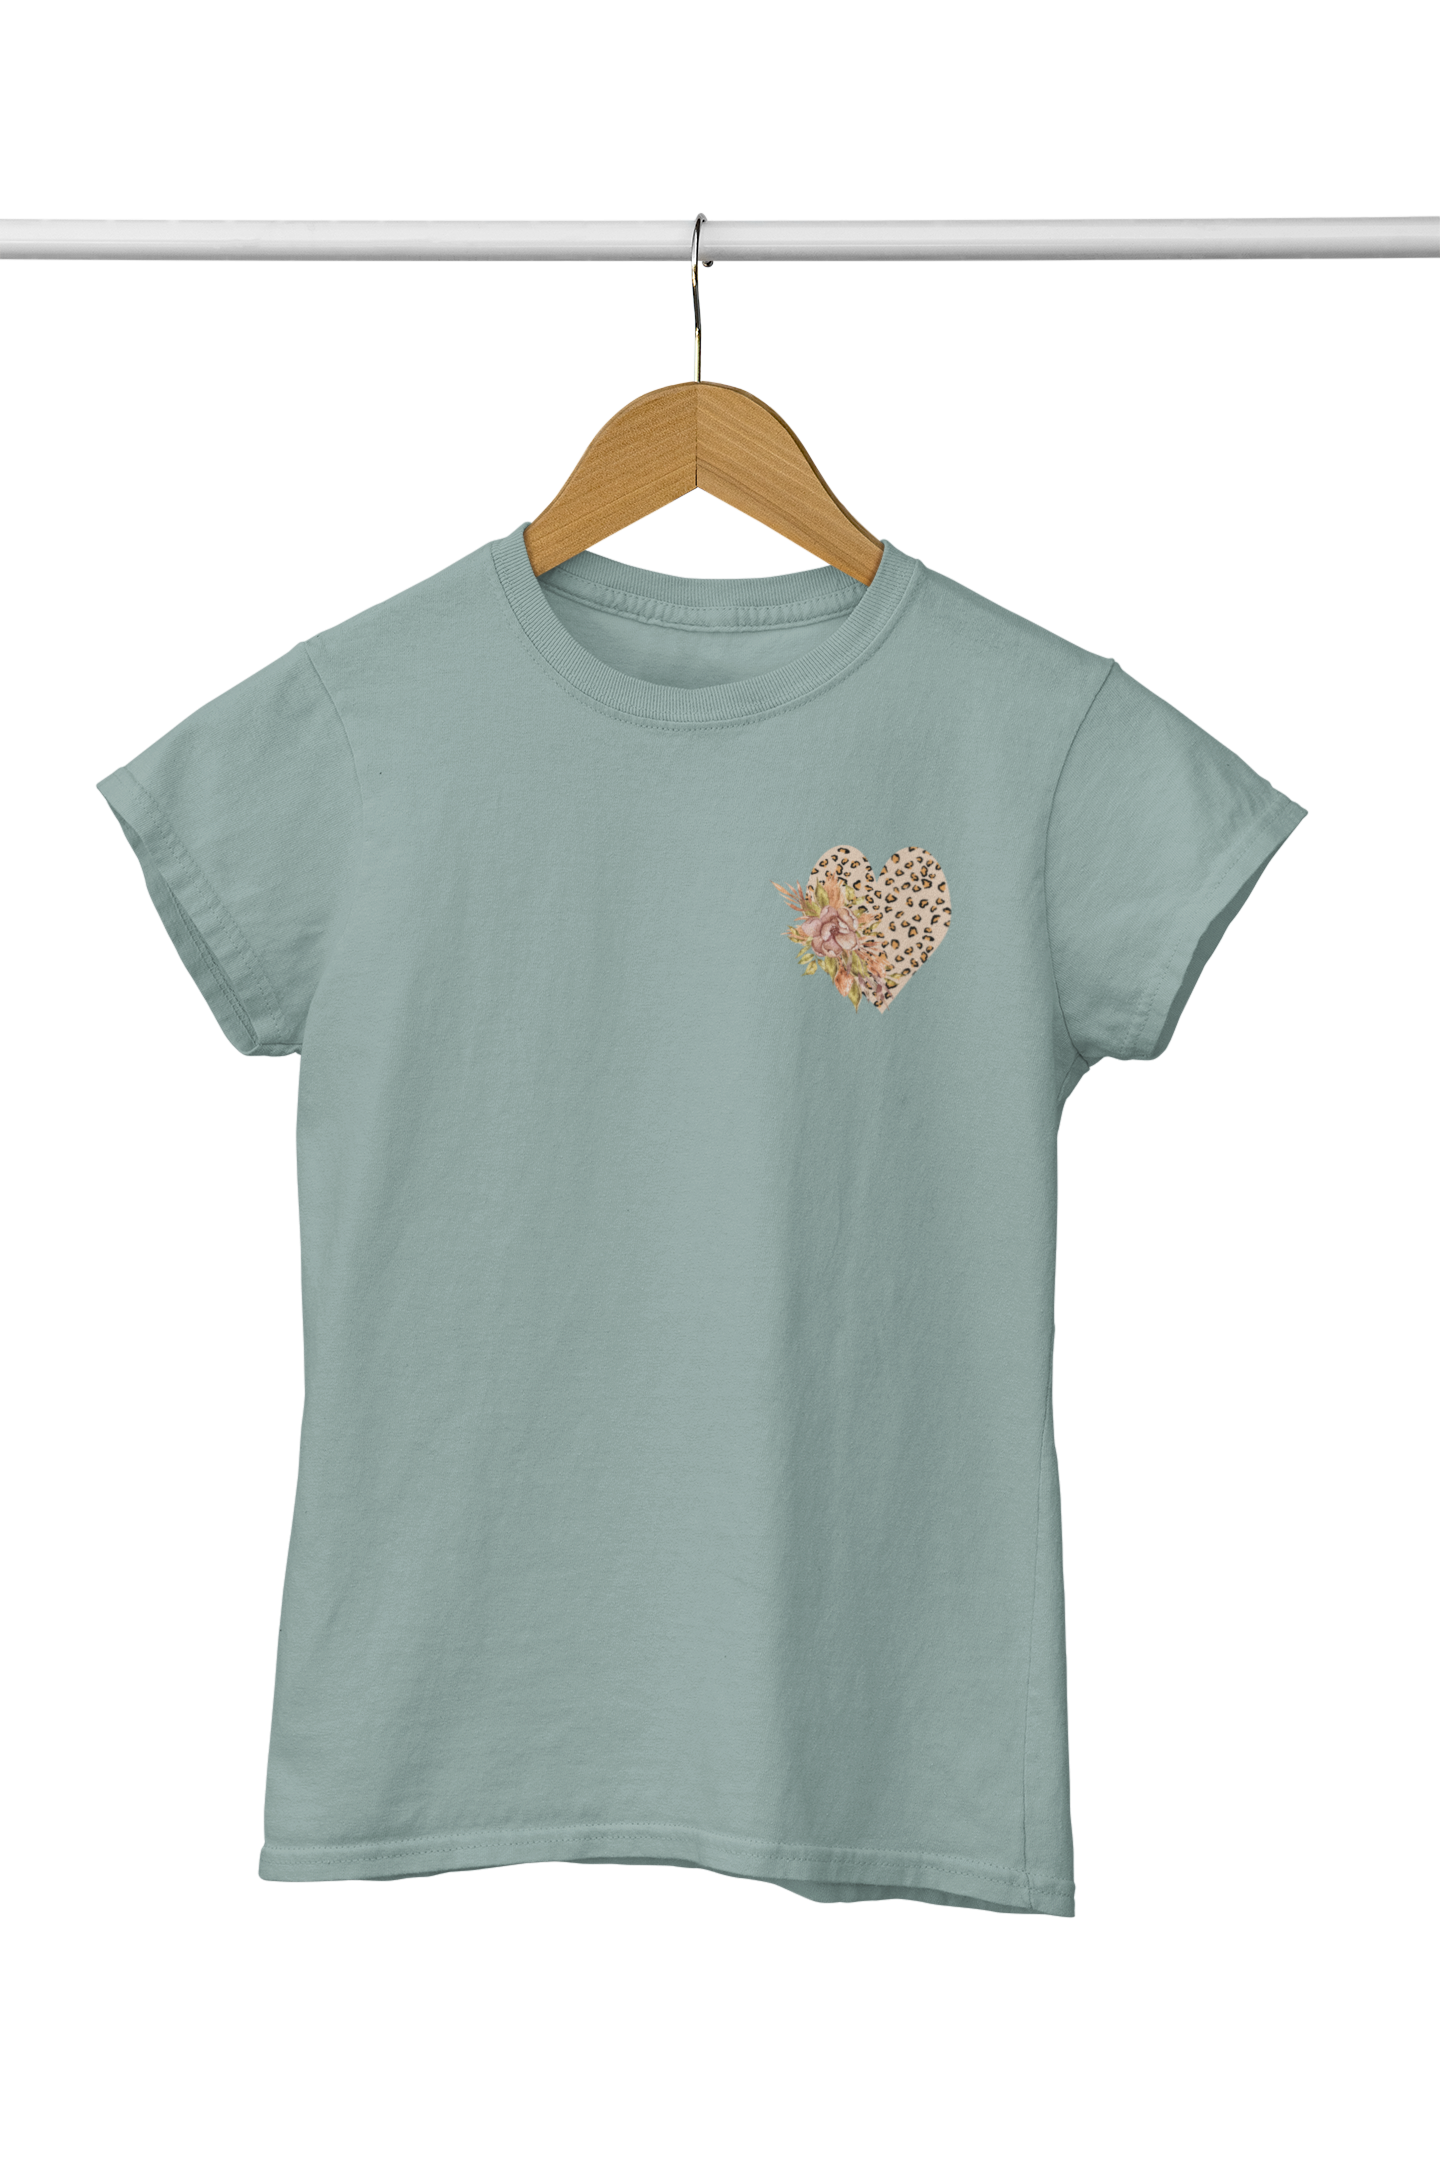 T-shirt bohemian heart